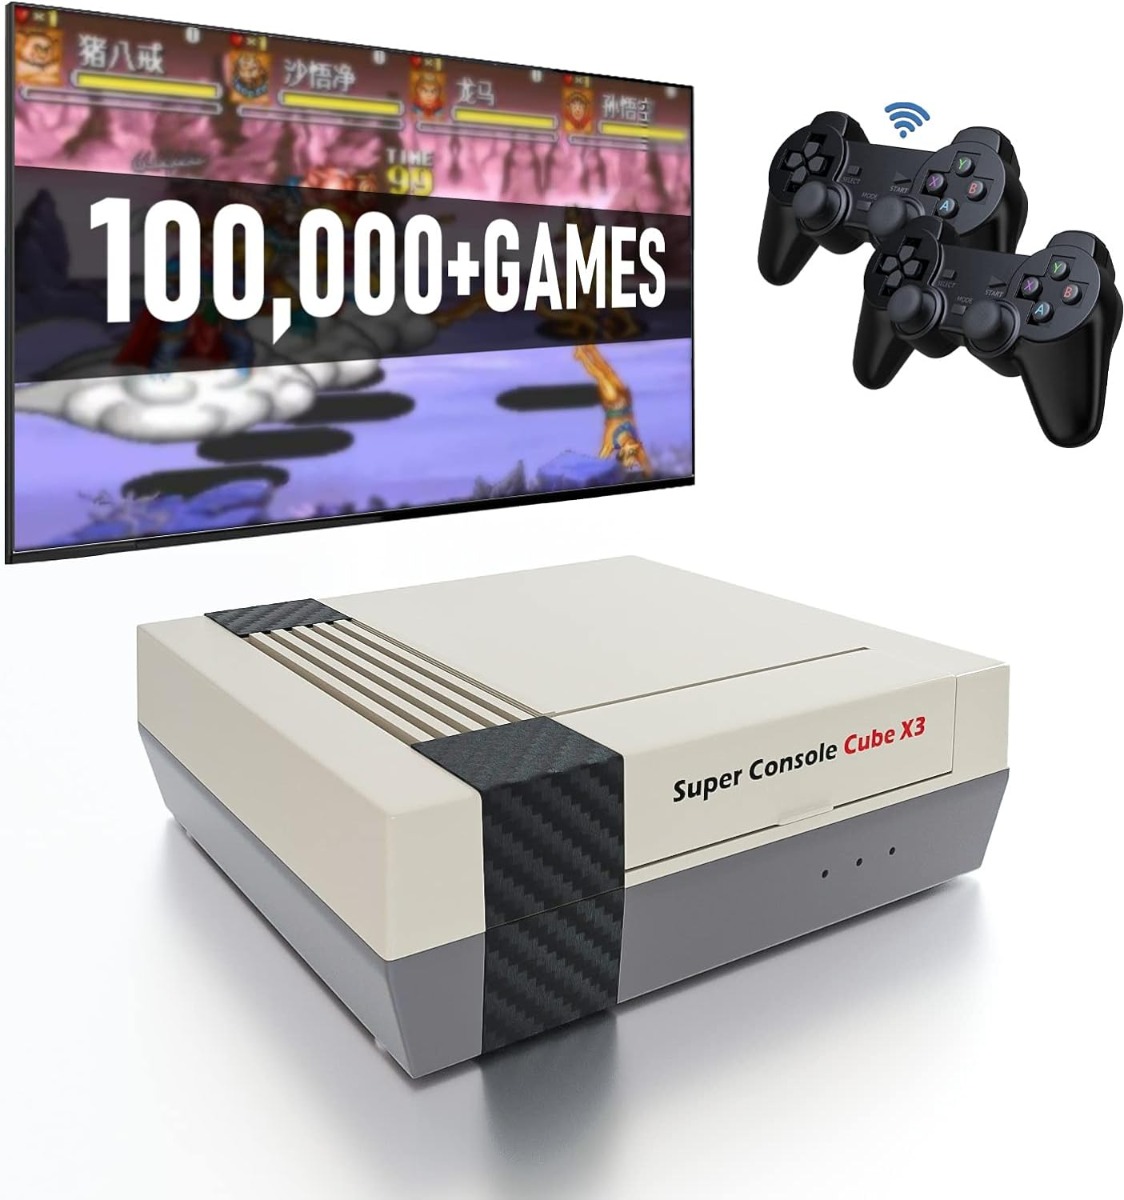 Retro Game Console Retro Play - Super Console Cube X3 Preinstalled 100,000+ Video Games